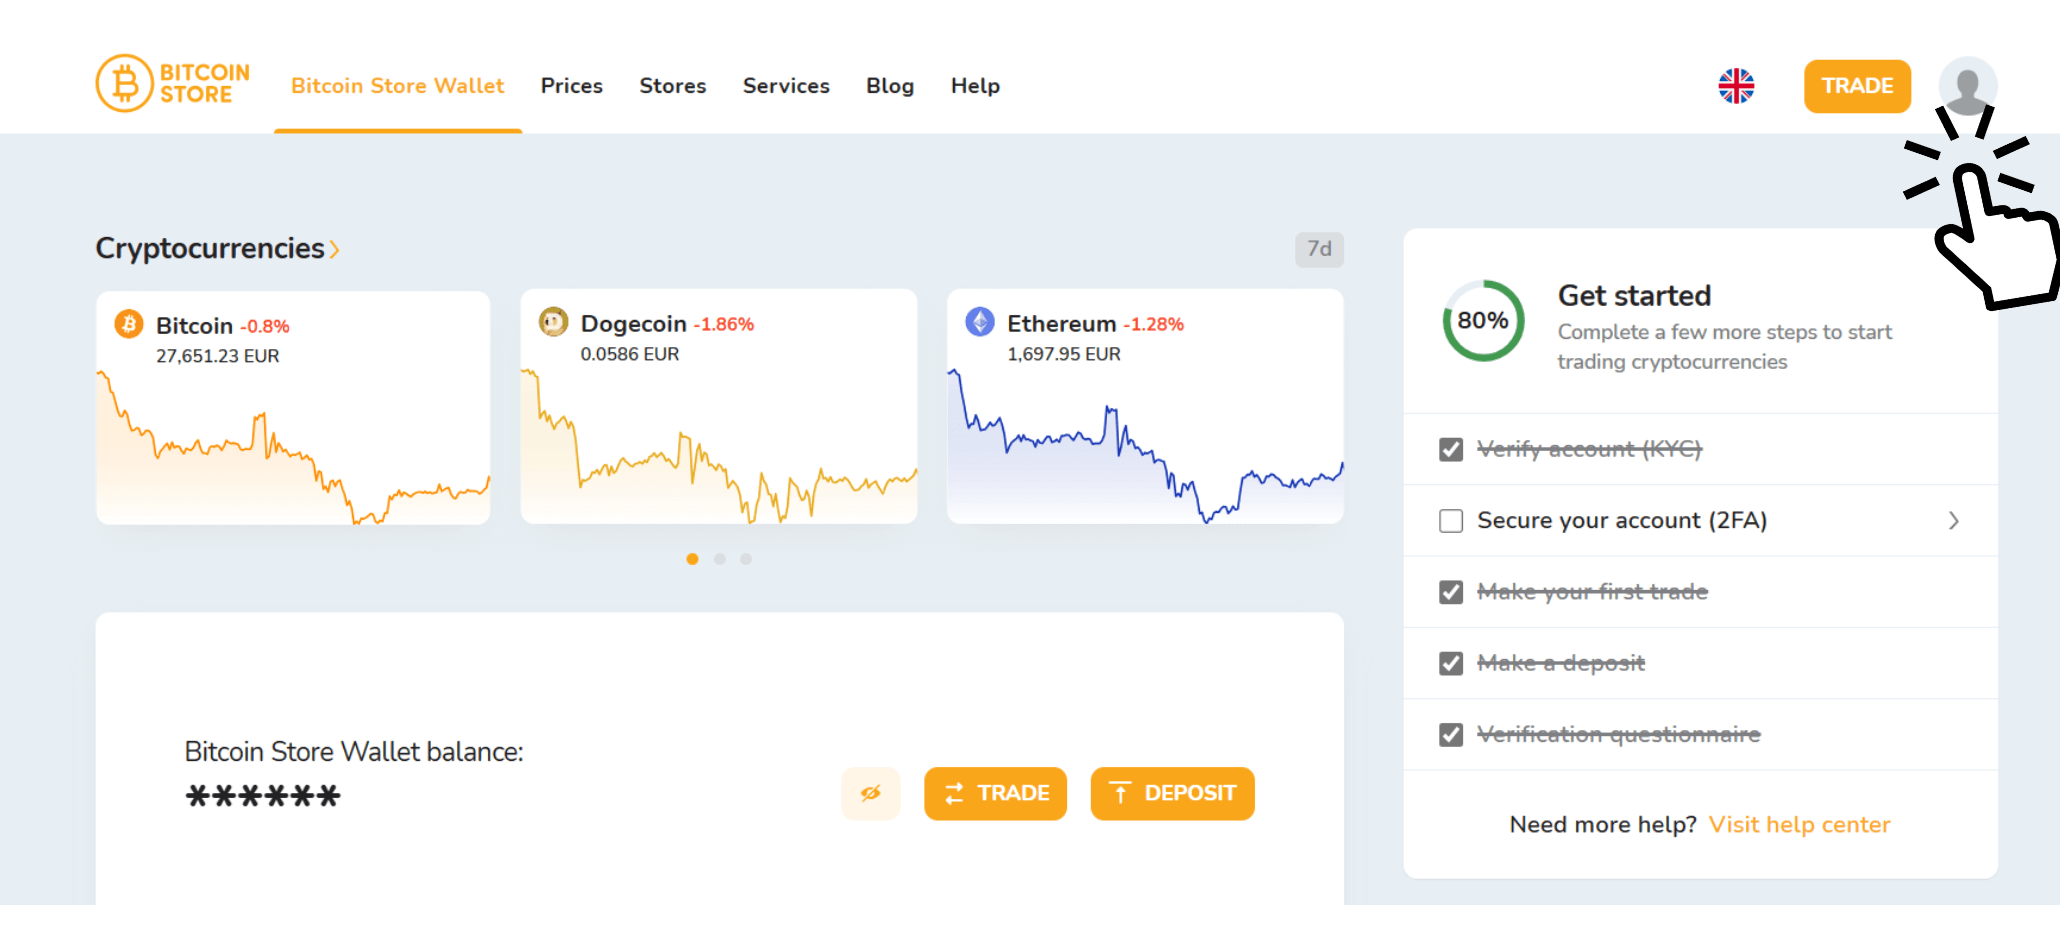 Snímek obrazovky aplikace Bitcoin Store Wallet ukazuje, jak platit nižší poplatky při obchodování s kryptoměnami.